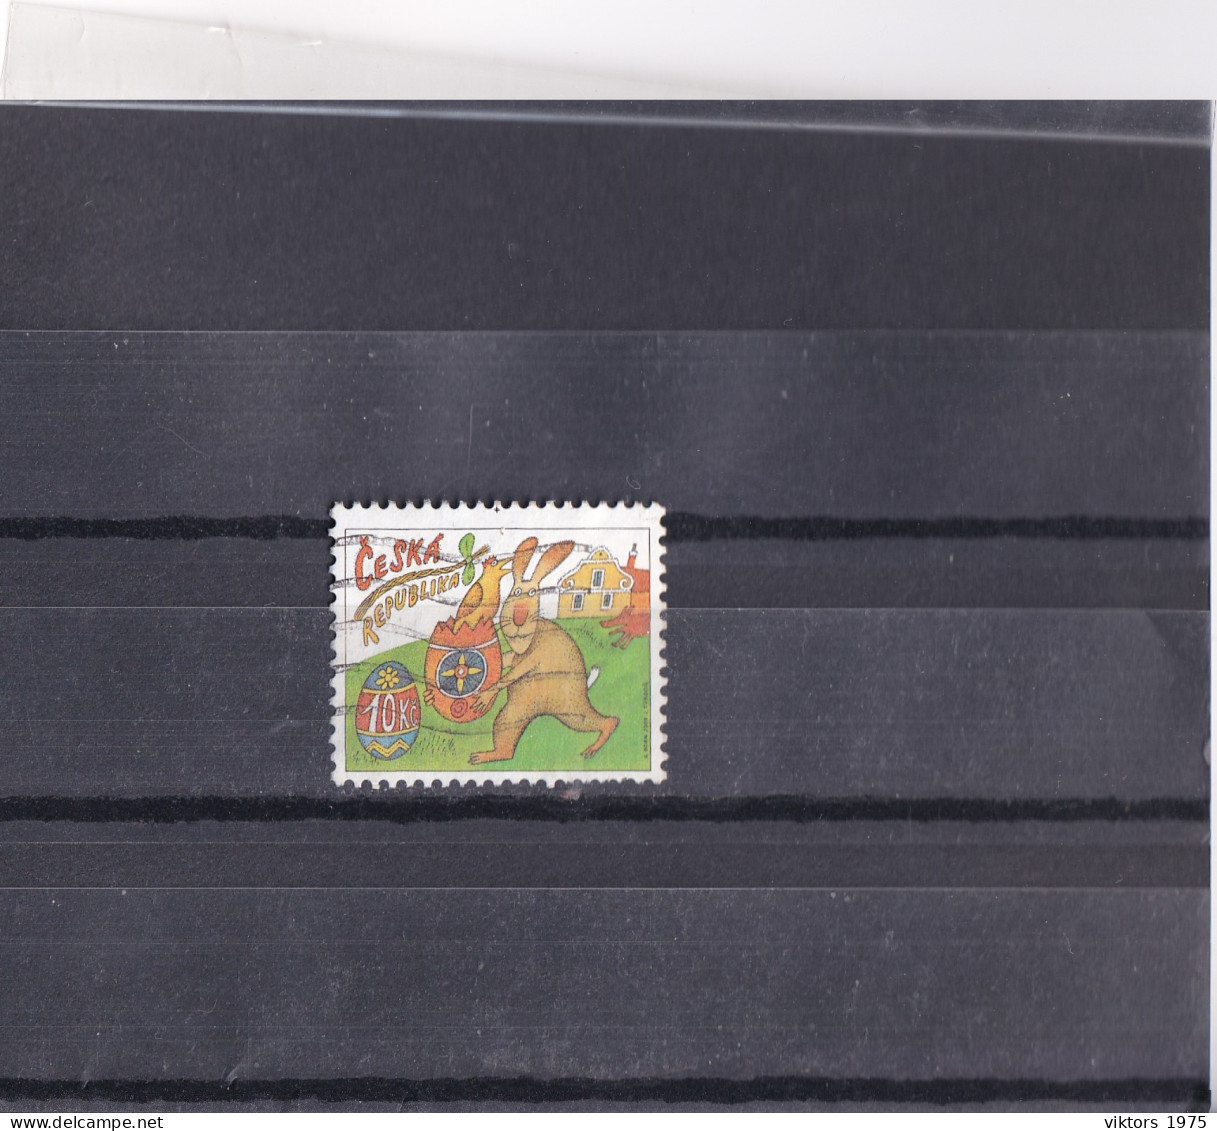 Used Stamp Nr.589 In MICHEL Catalog - Usati